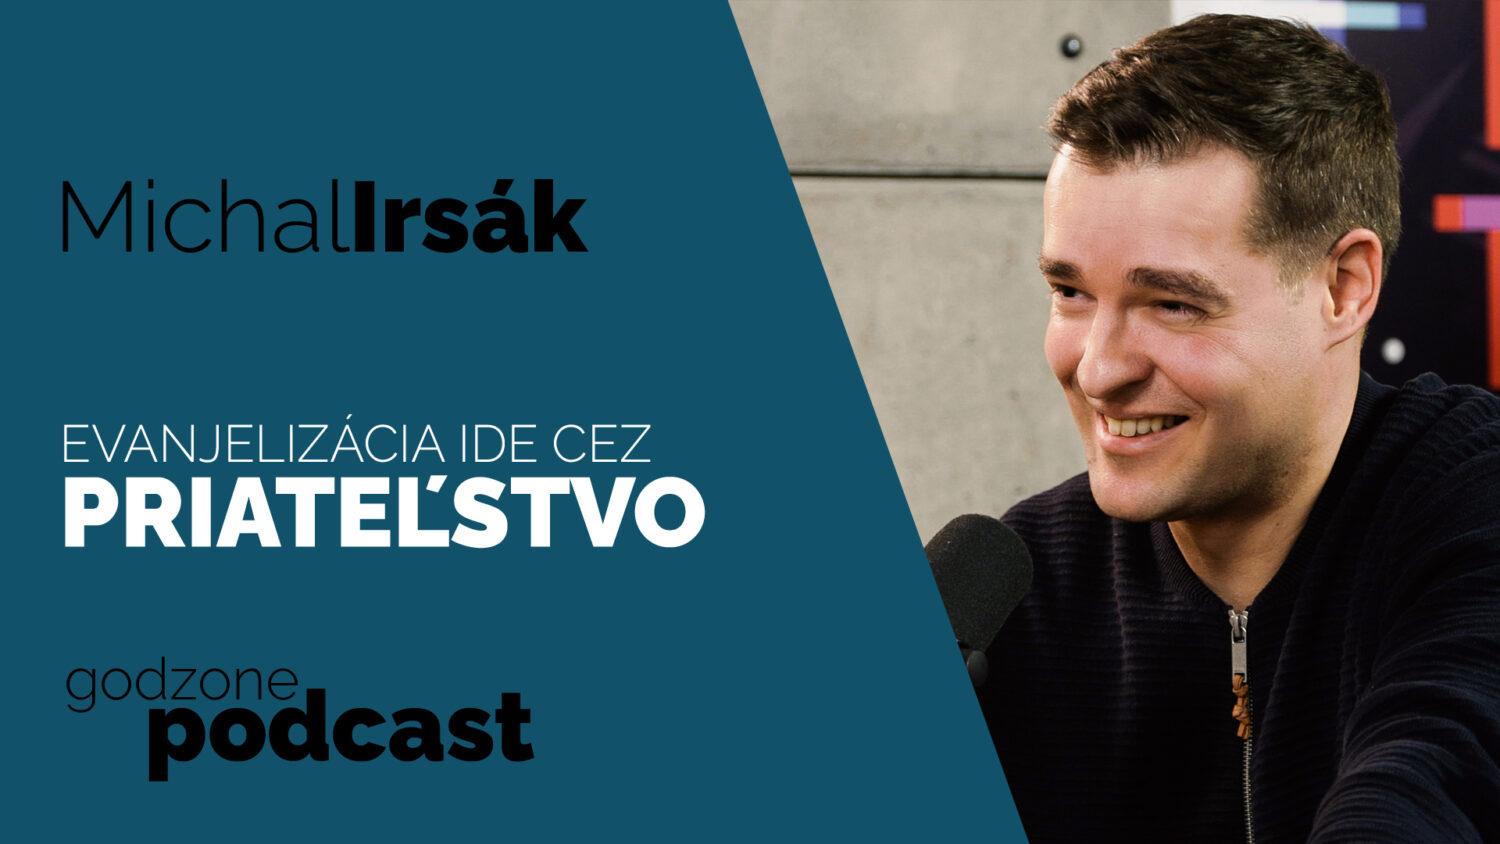 Godzone podcast_Michal Irsák: Evanjelizácia ide cez priateľstvo